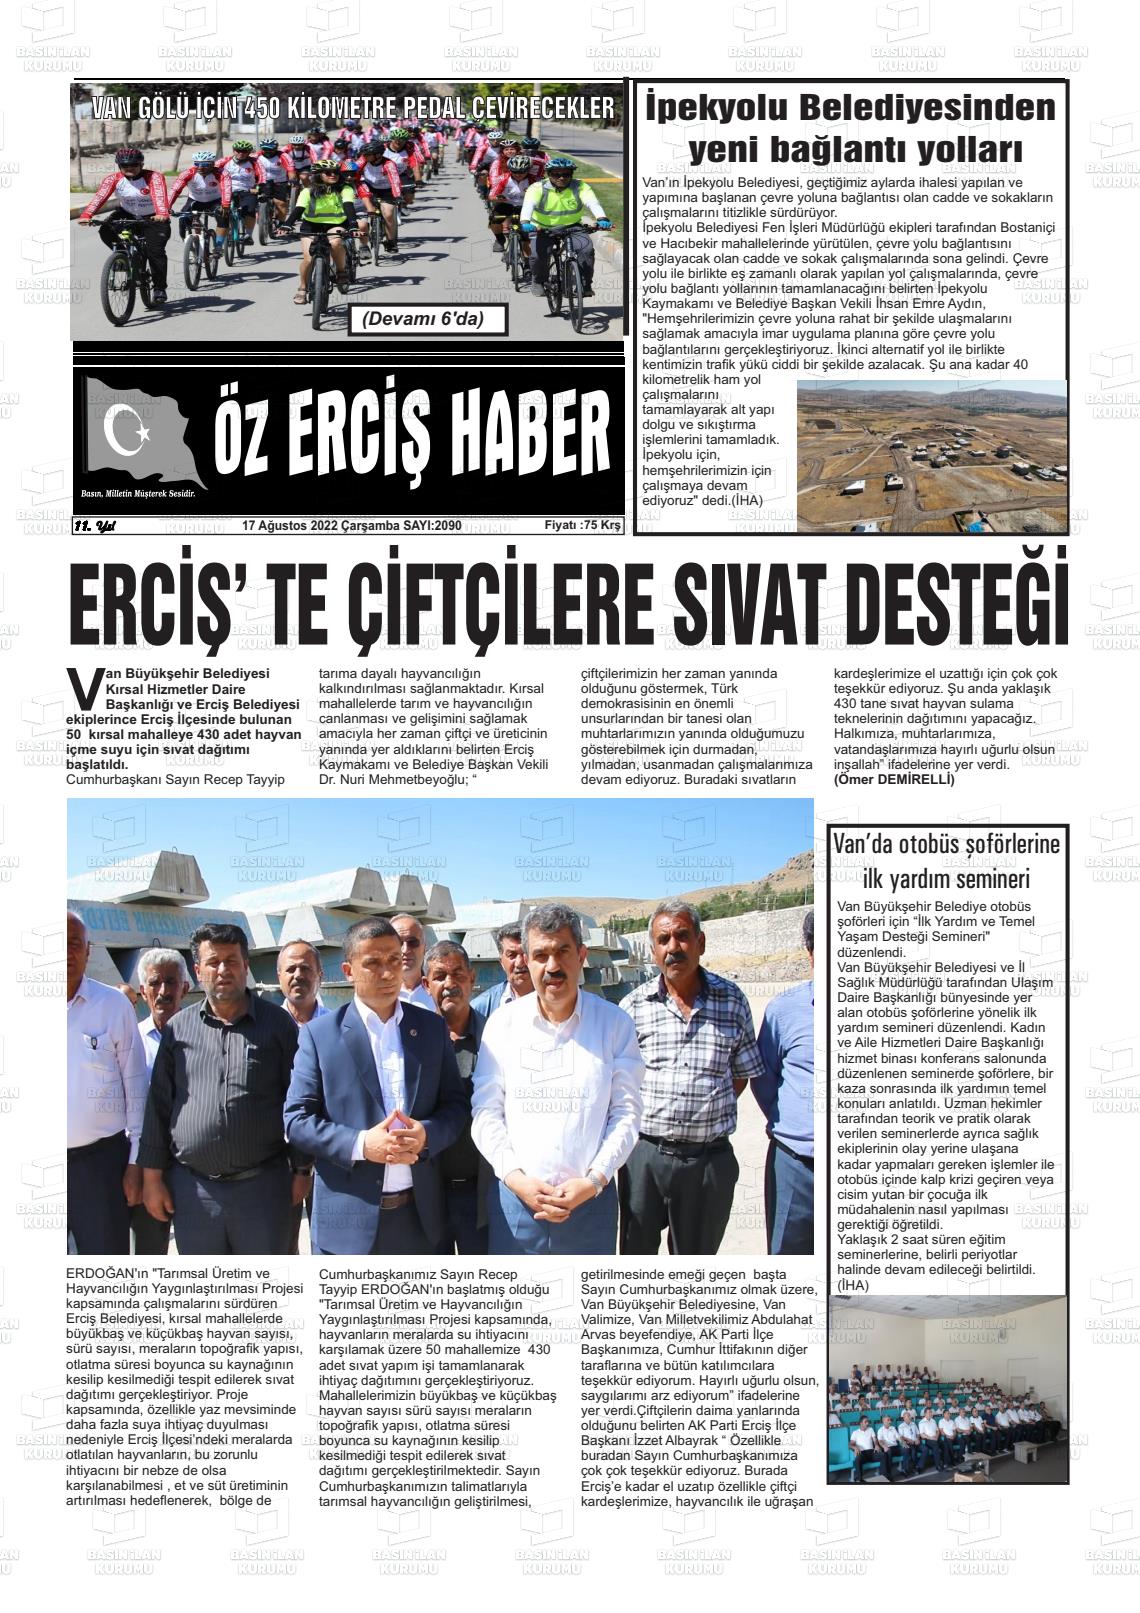 17 Ağustos 2022 Öz Erciş Haber Gazete Manşeti